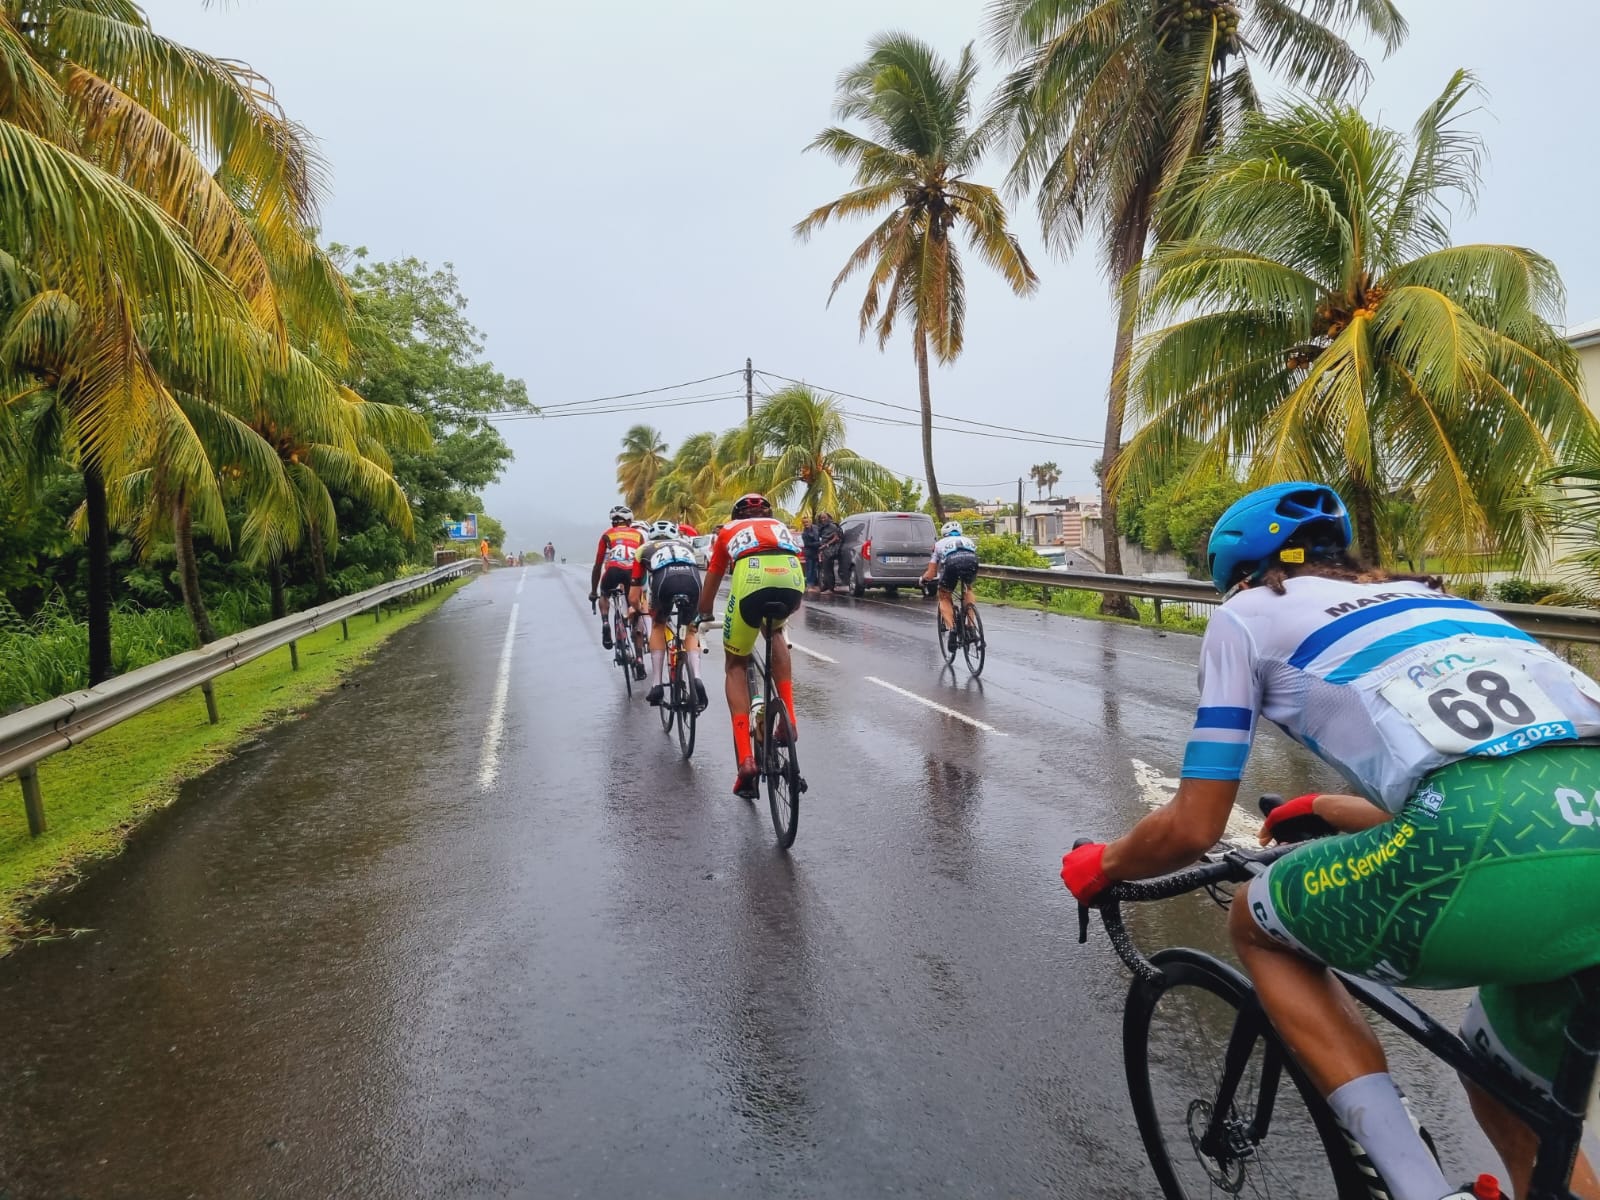     5ème étape du Tour cycliste de Martinique : l'heure des grimpeurs

